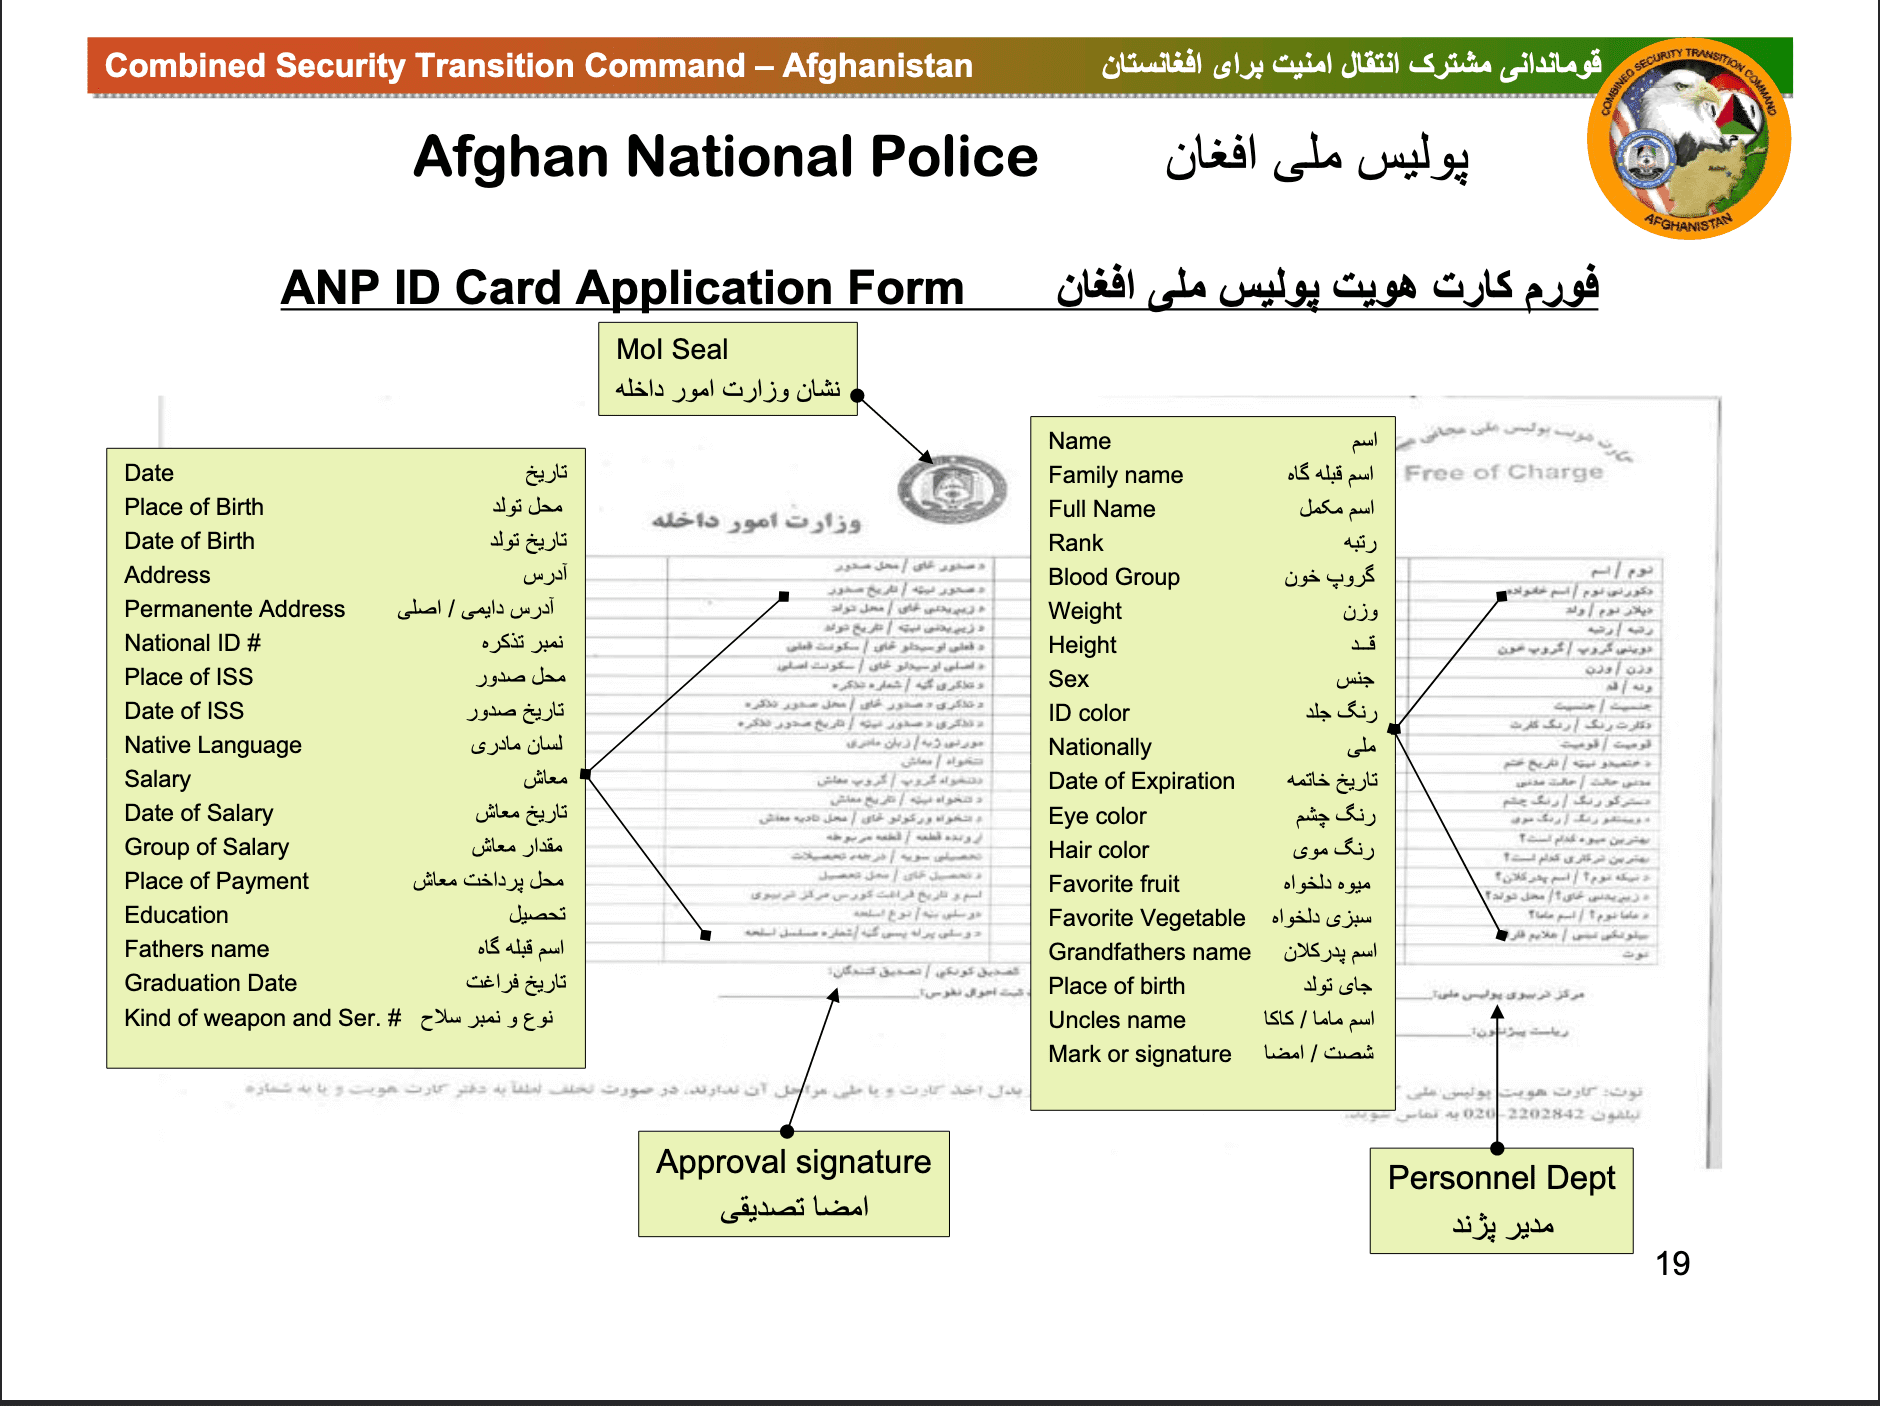 القصة الحقيقية لقواعد بيانات المقاييس الحيوية الأفغانية التي وقعت في أيدي طالبان